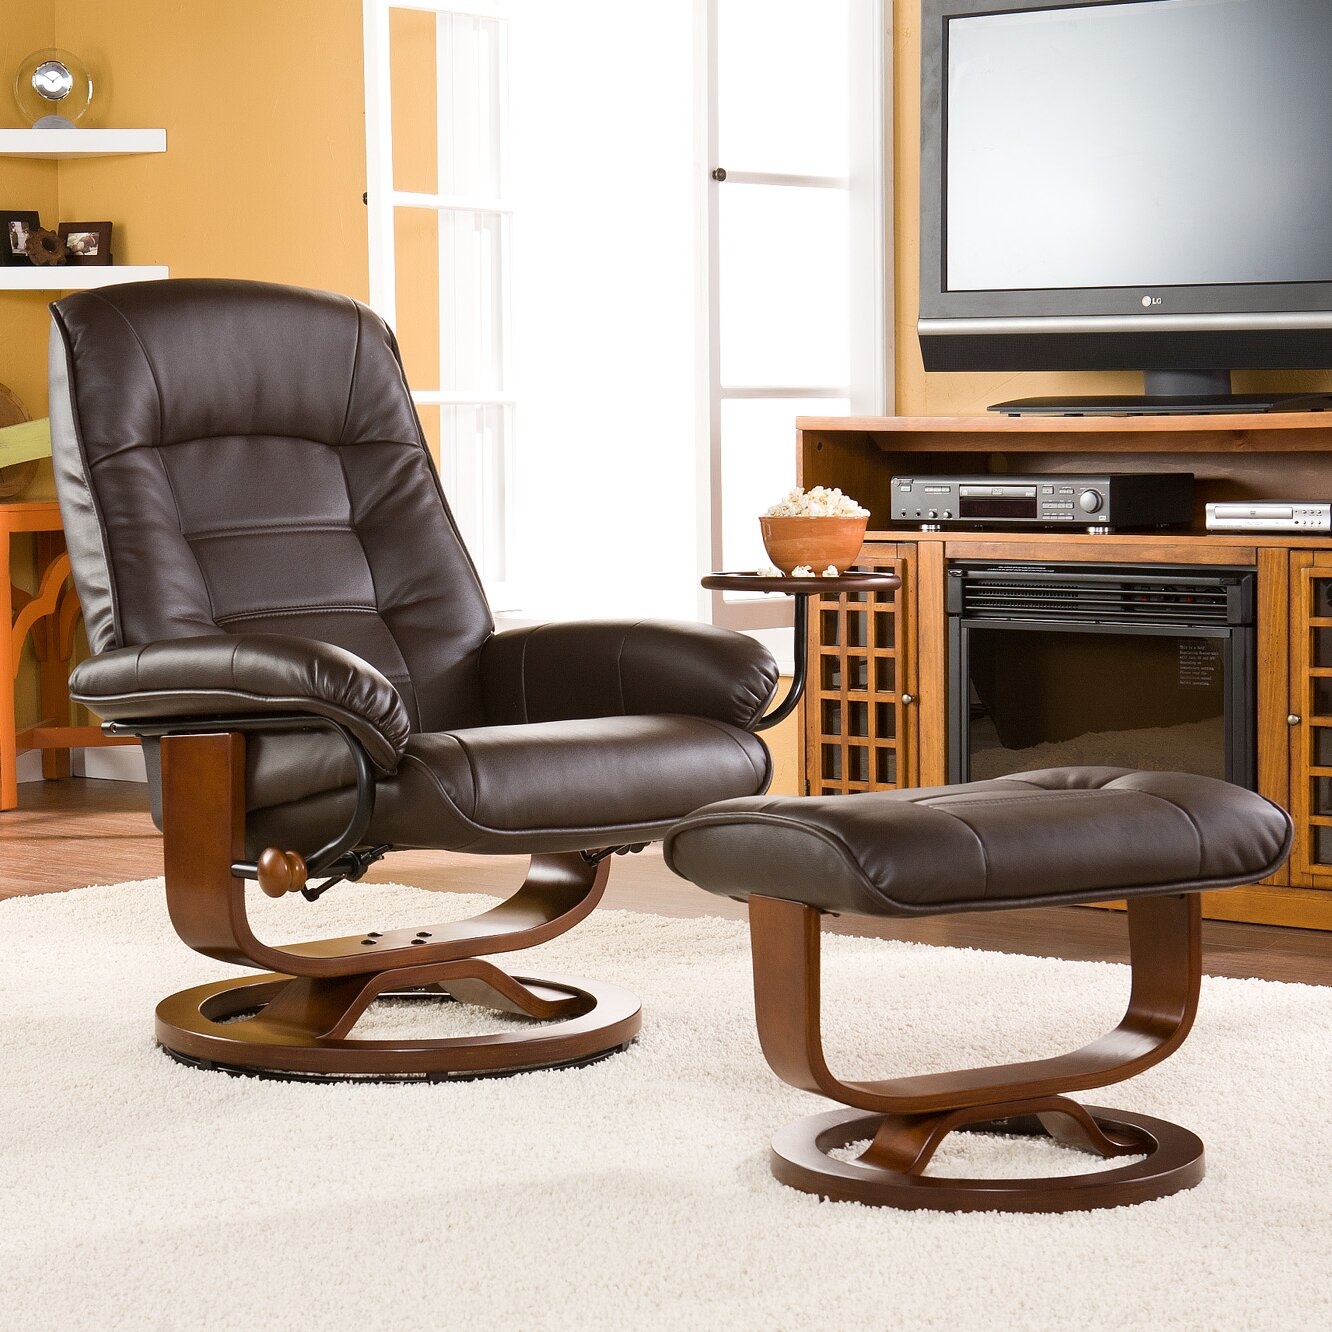 Ergonomic living room furniture